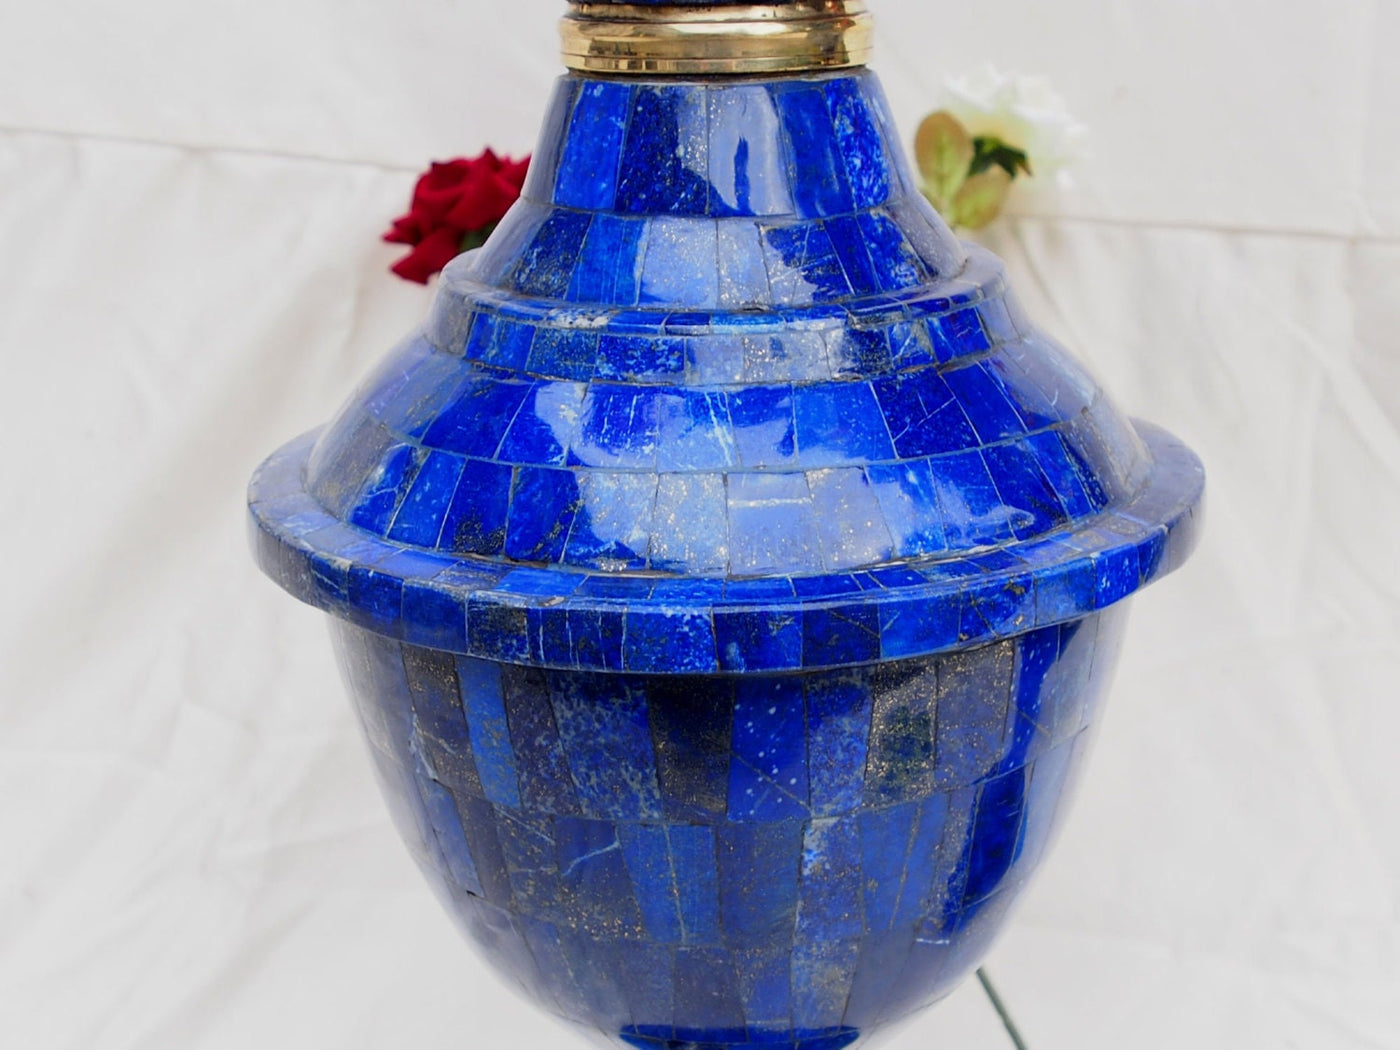 Extravagant Große Bodenvase 57 cm  Exclusive Royal blau echt Lapis Lazuli Vase Prunkvase Blumenvase aus Afghanistan -XXL  Orientsbazar   